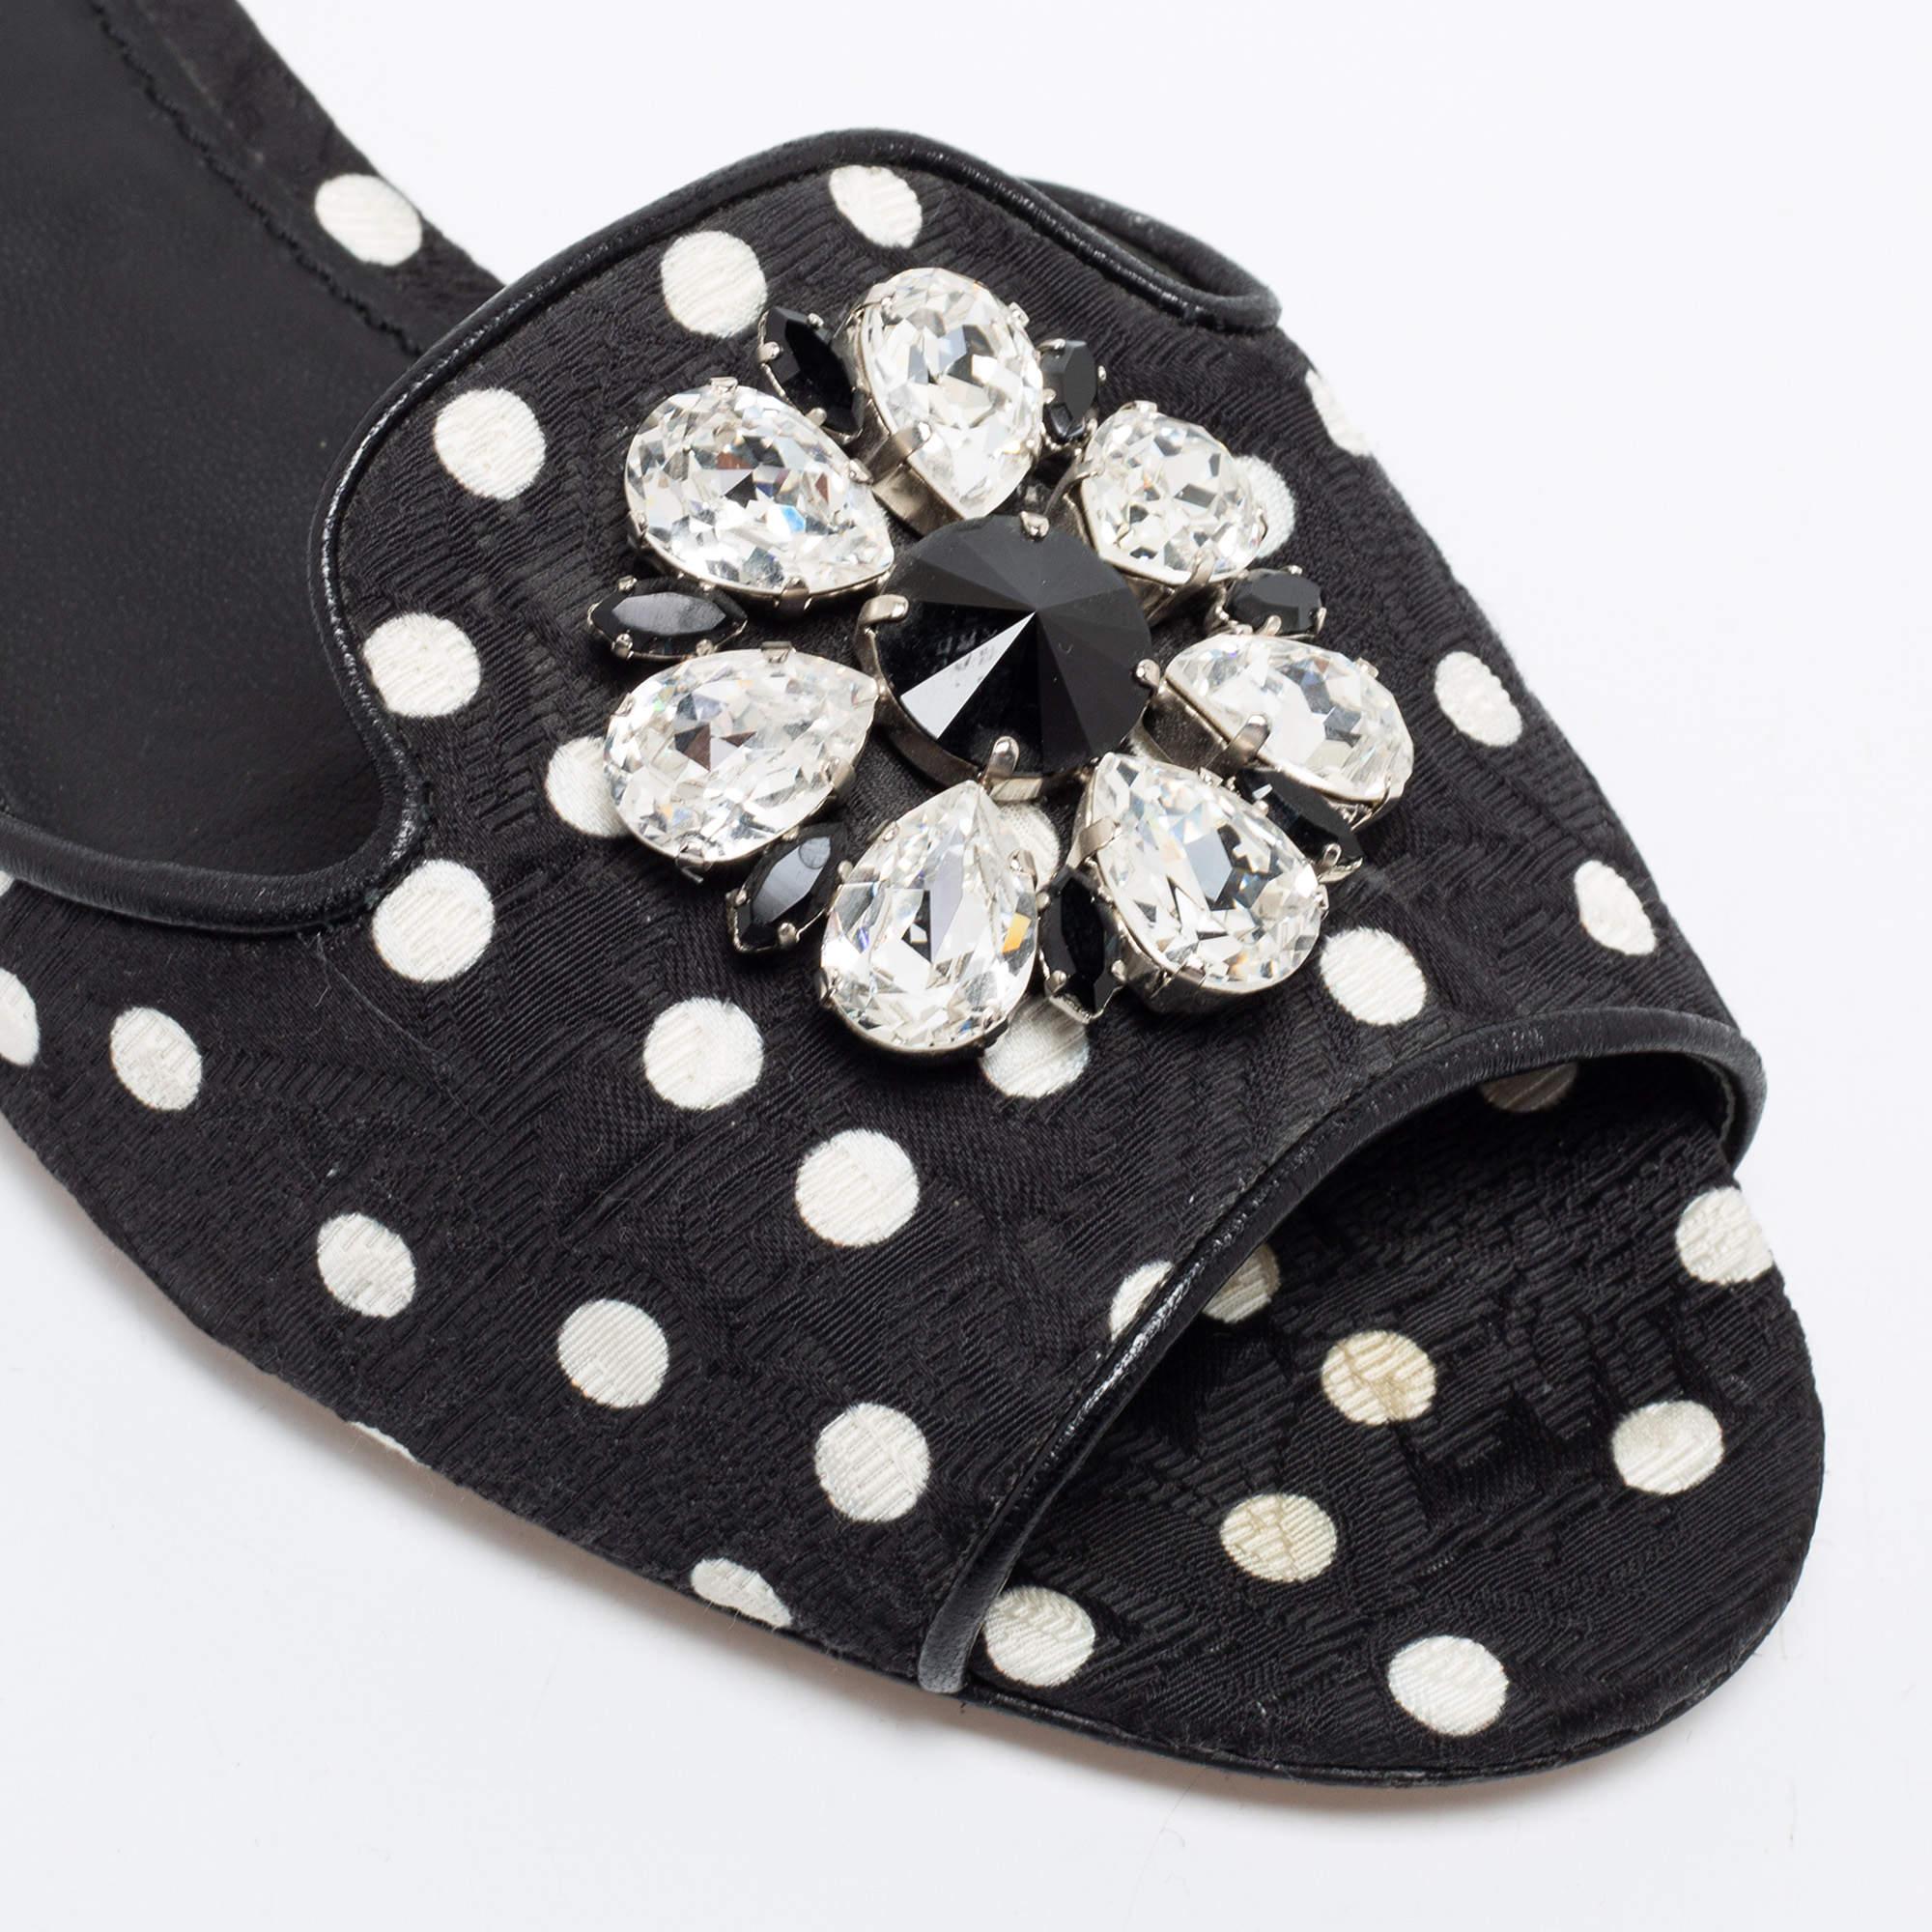 Dolce & Gabbana Polka Dot Fabric Crystal Embellished Flat Slide Sandals Size 40 2